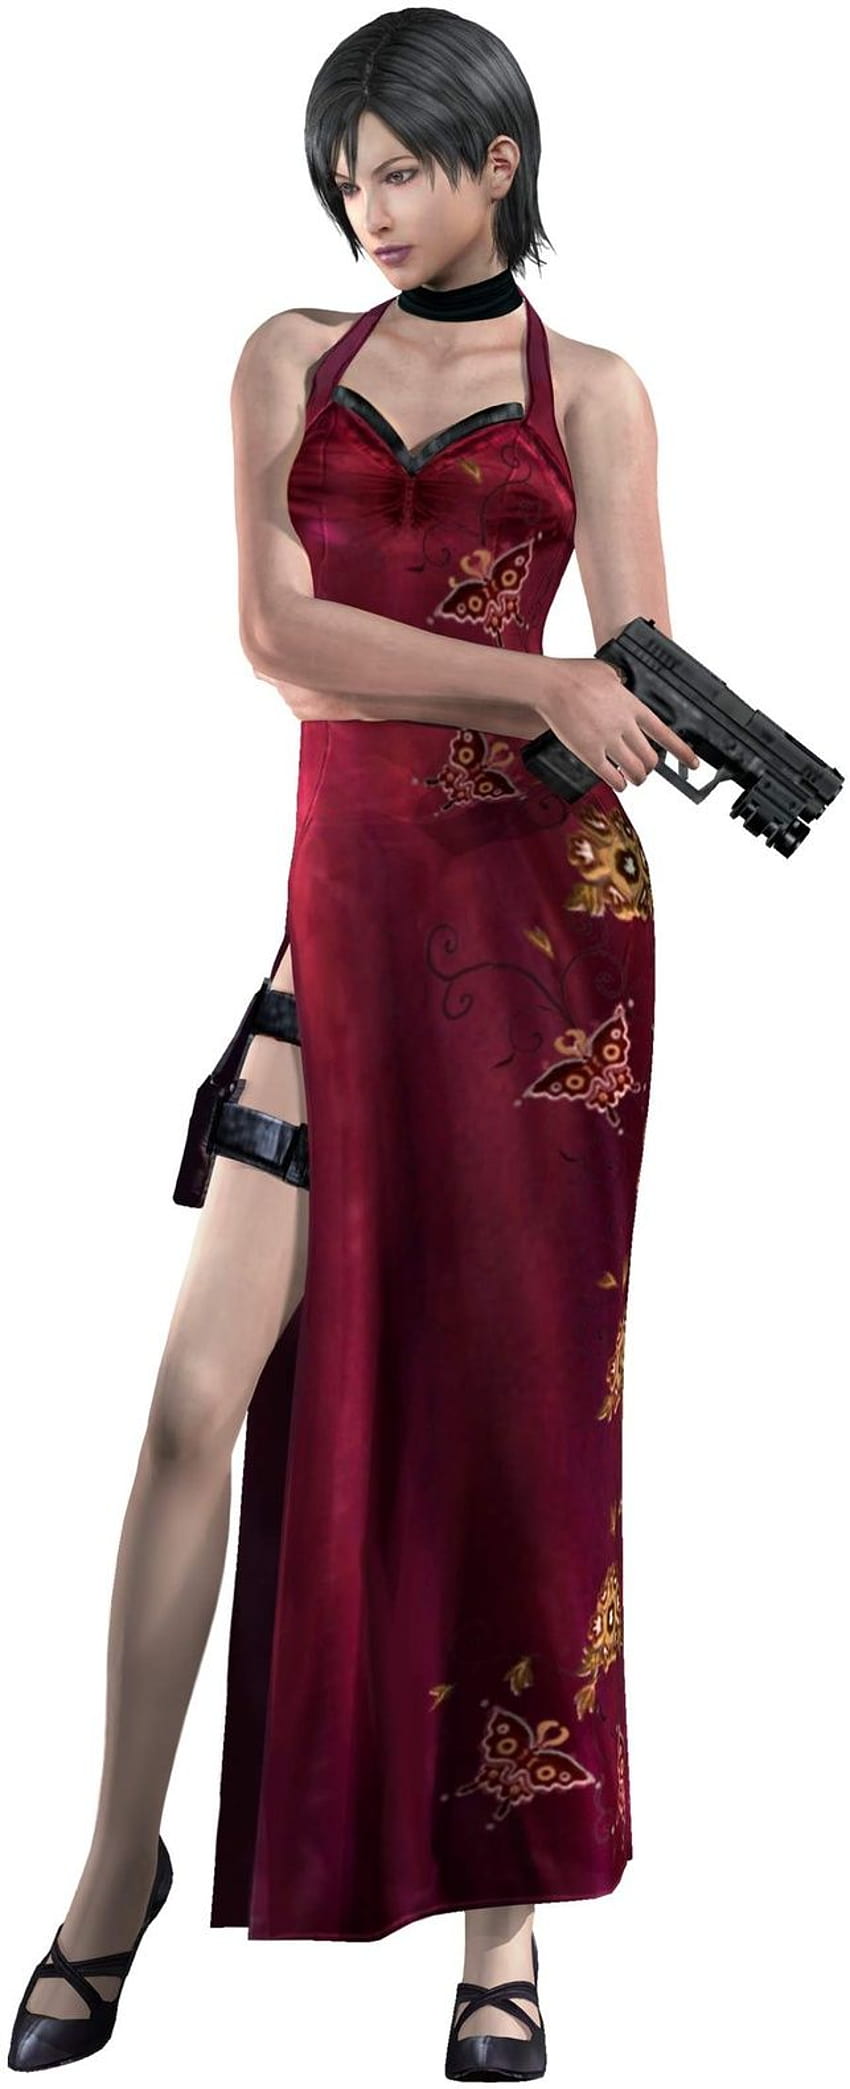 Personaggi dei videogiochi Femmina, ada wong resident evil 4 Sfondo del telefono HD